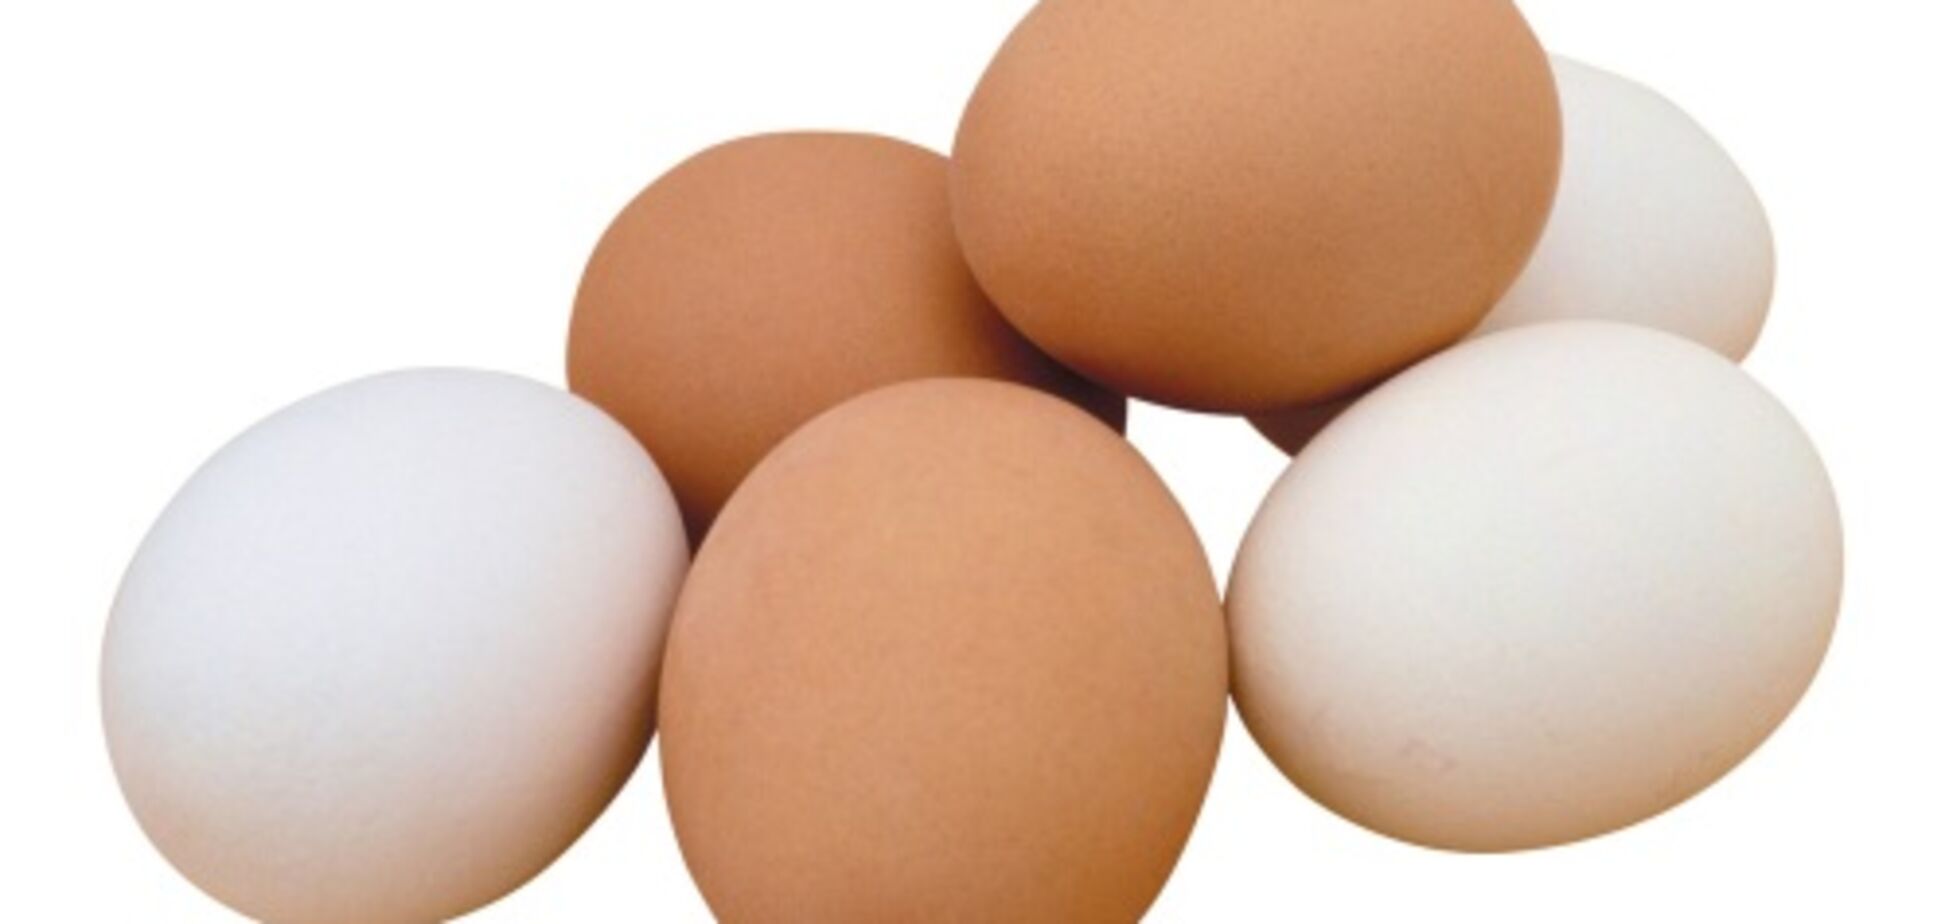 Рецепт от мамы: как вкусно сварить яйцо